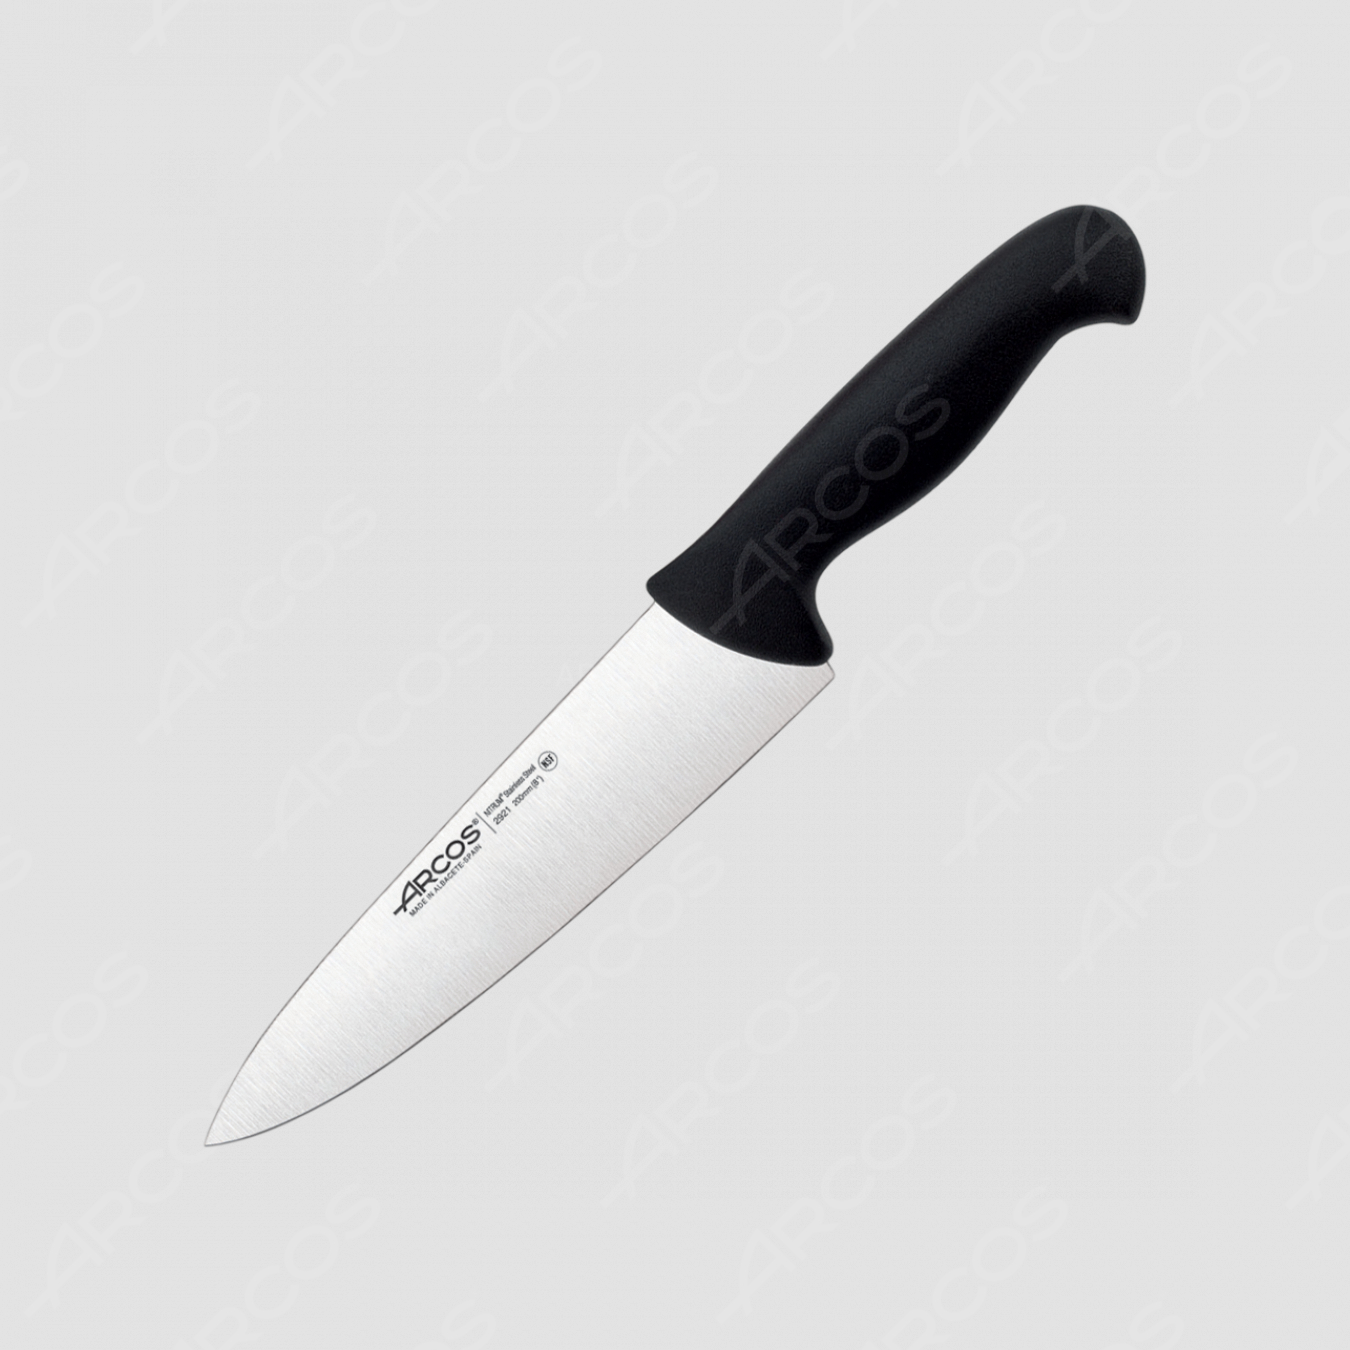 Профессиональный поварской кухонный нож 20 см, рукоять черная, серия 2900, ARCOS, Испания